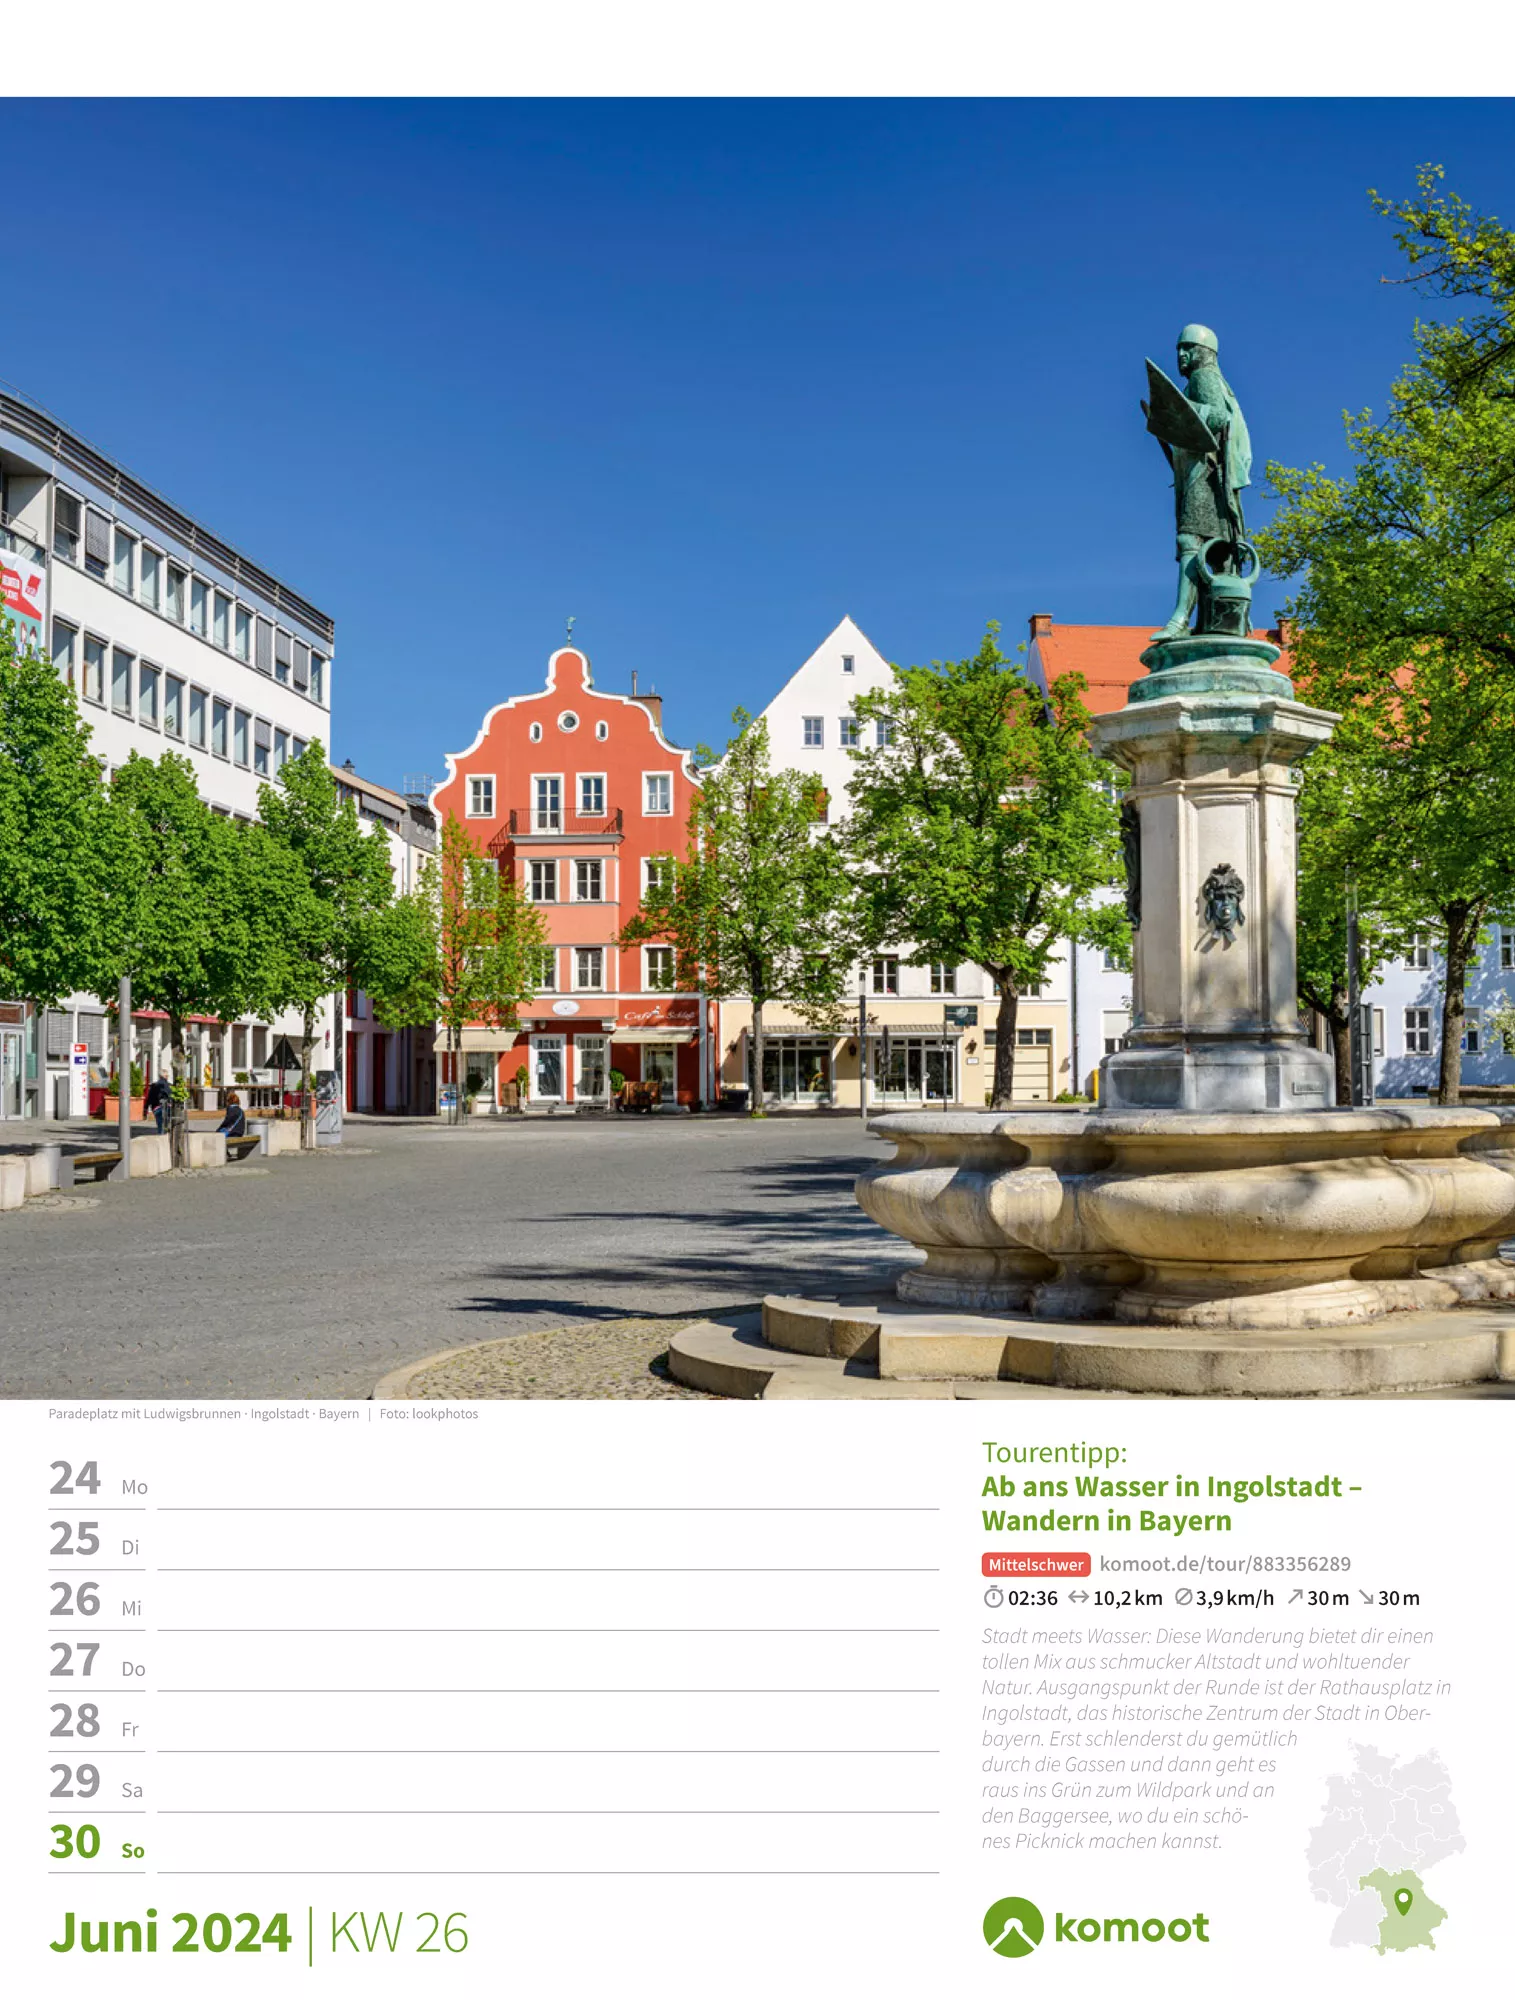 Ackermann Kalender Deutschland ist wanderbar! Komoot - Wochenplaner 2024 - Innenansicht 29